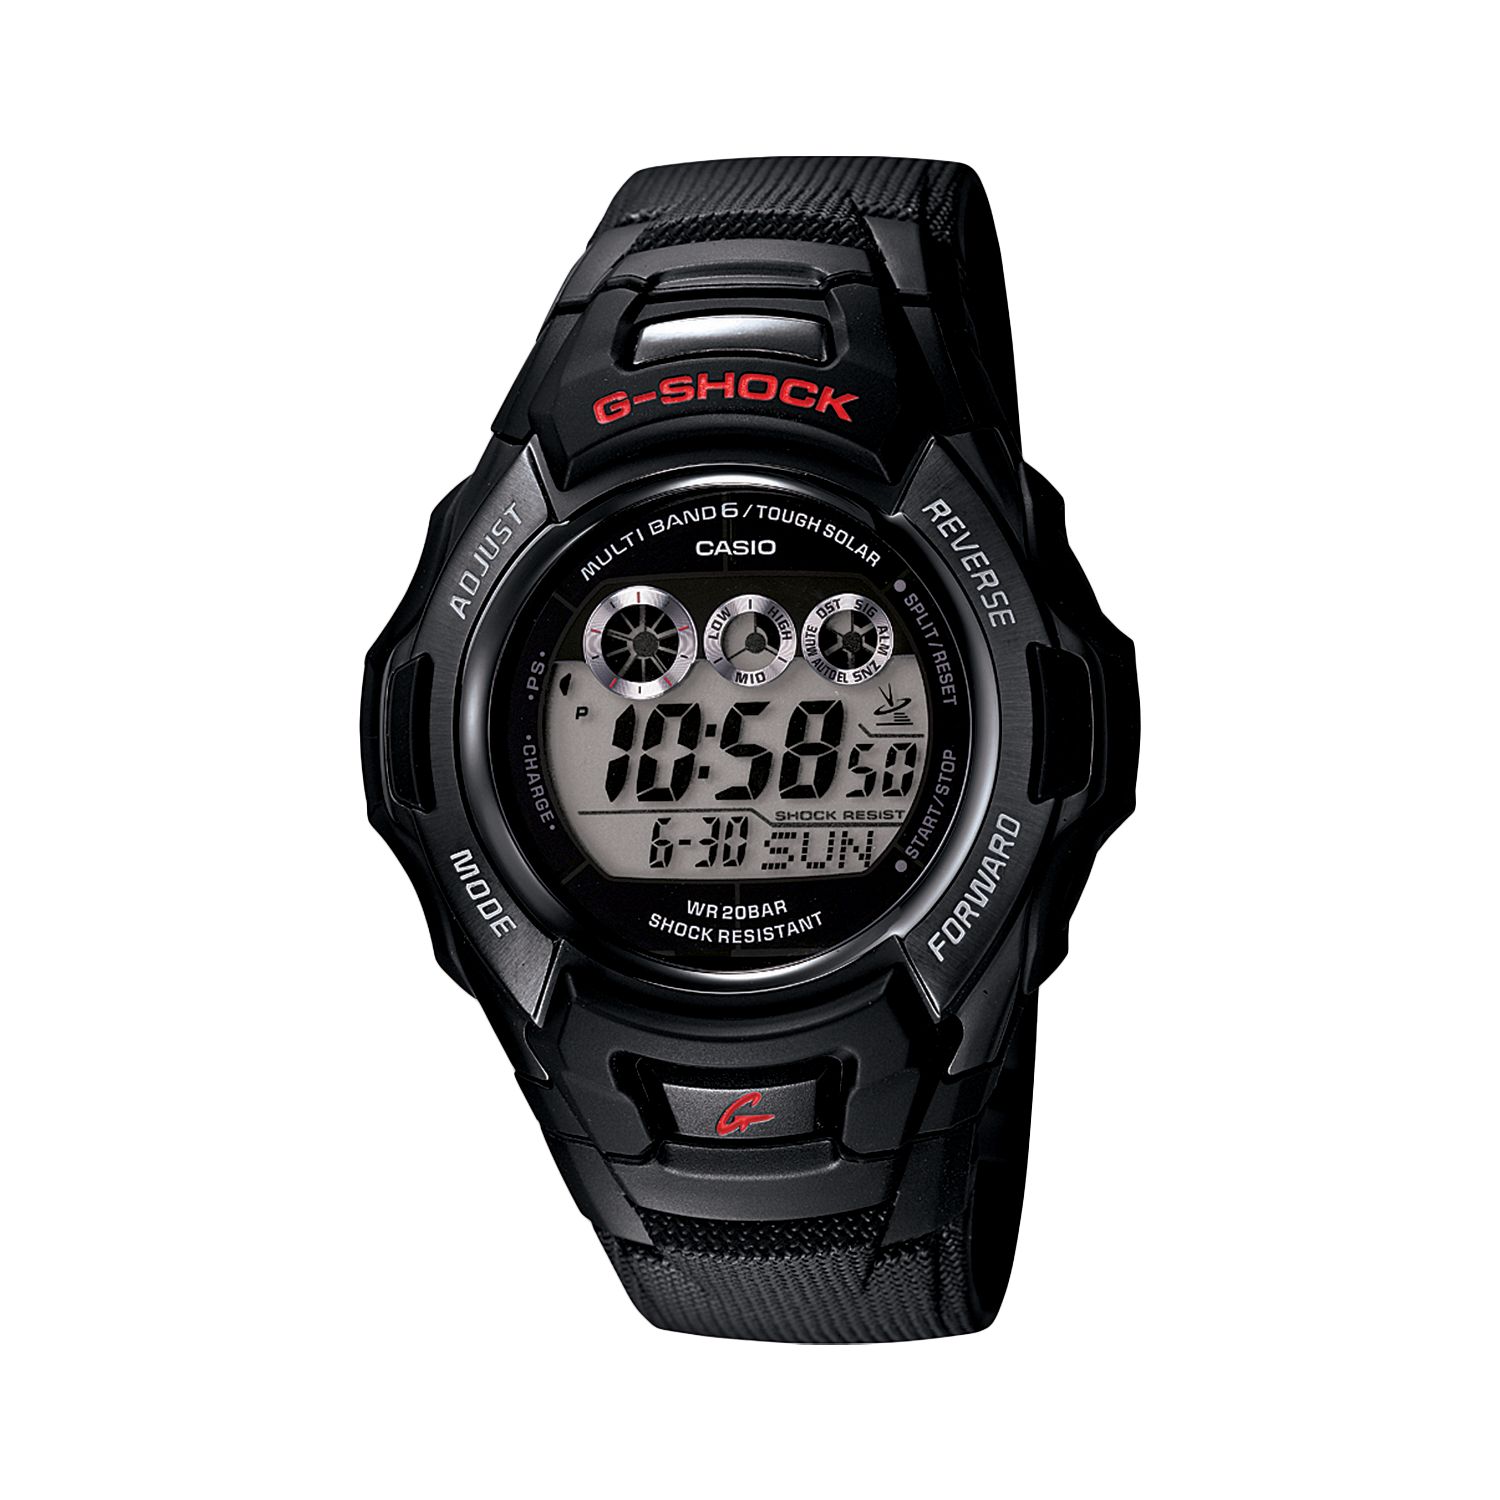 Мужские часы G-Shock Tough Solar Atomic с цифровым хронографом — GWM530A-1 Casio цена и фото